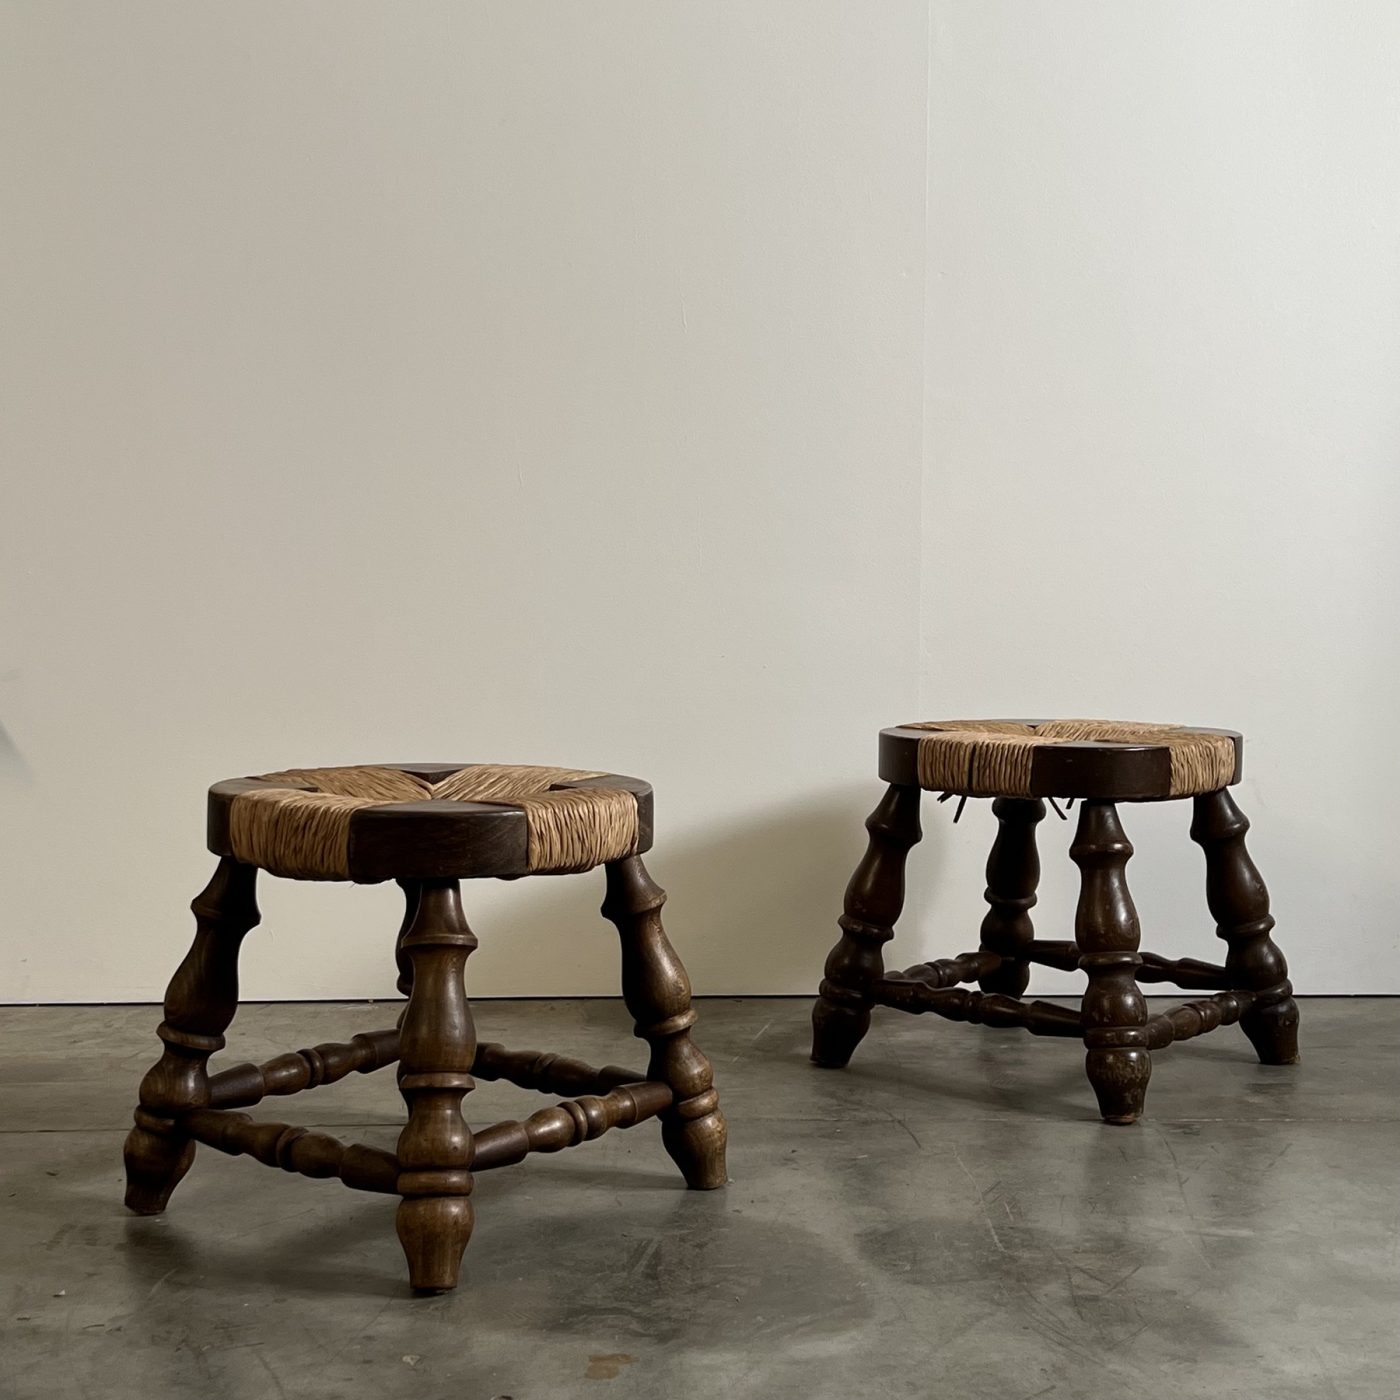 objet-vagabond-brutalist-stools0002